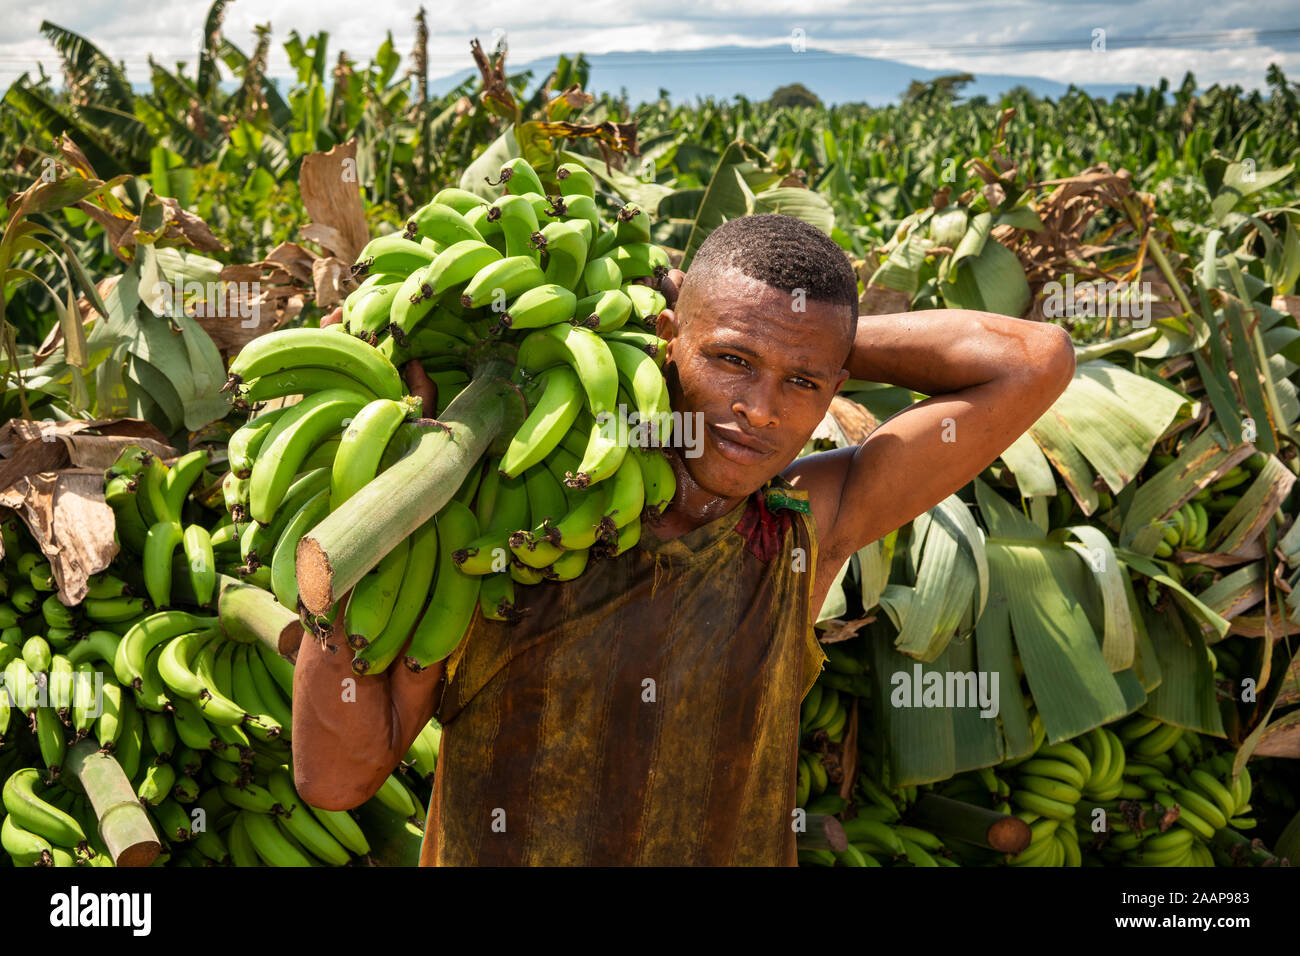 Etiopía, Gamo-Gofa, Arba Minch, plantación de bananos, plátanos el hombre lleva sobre los hombros Foto de stock